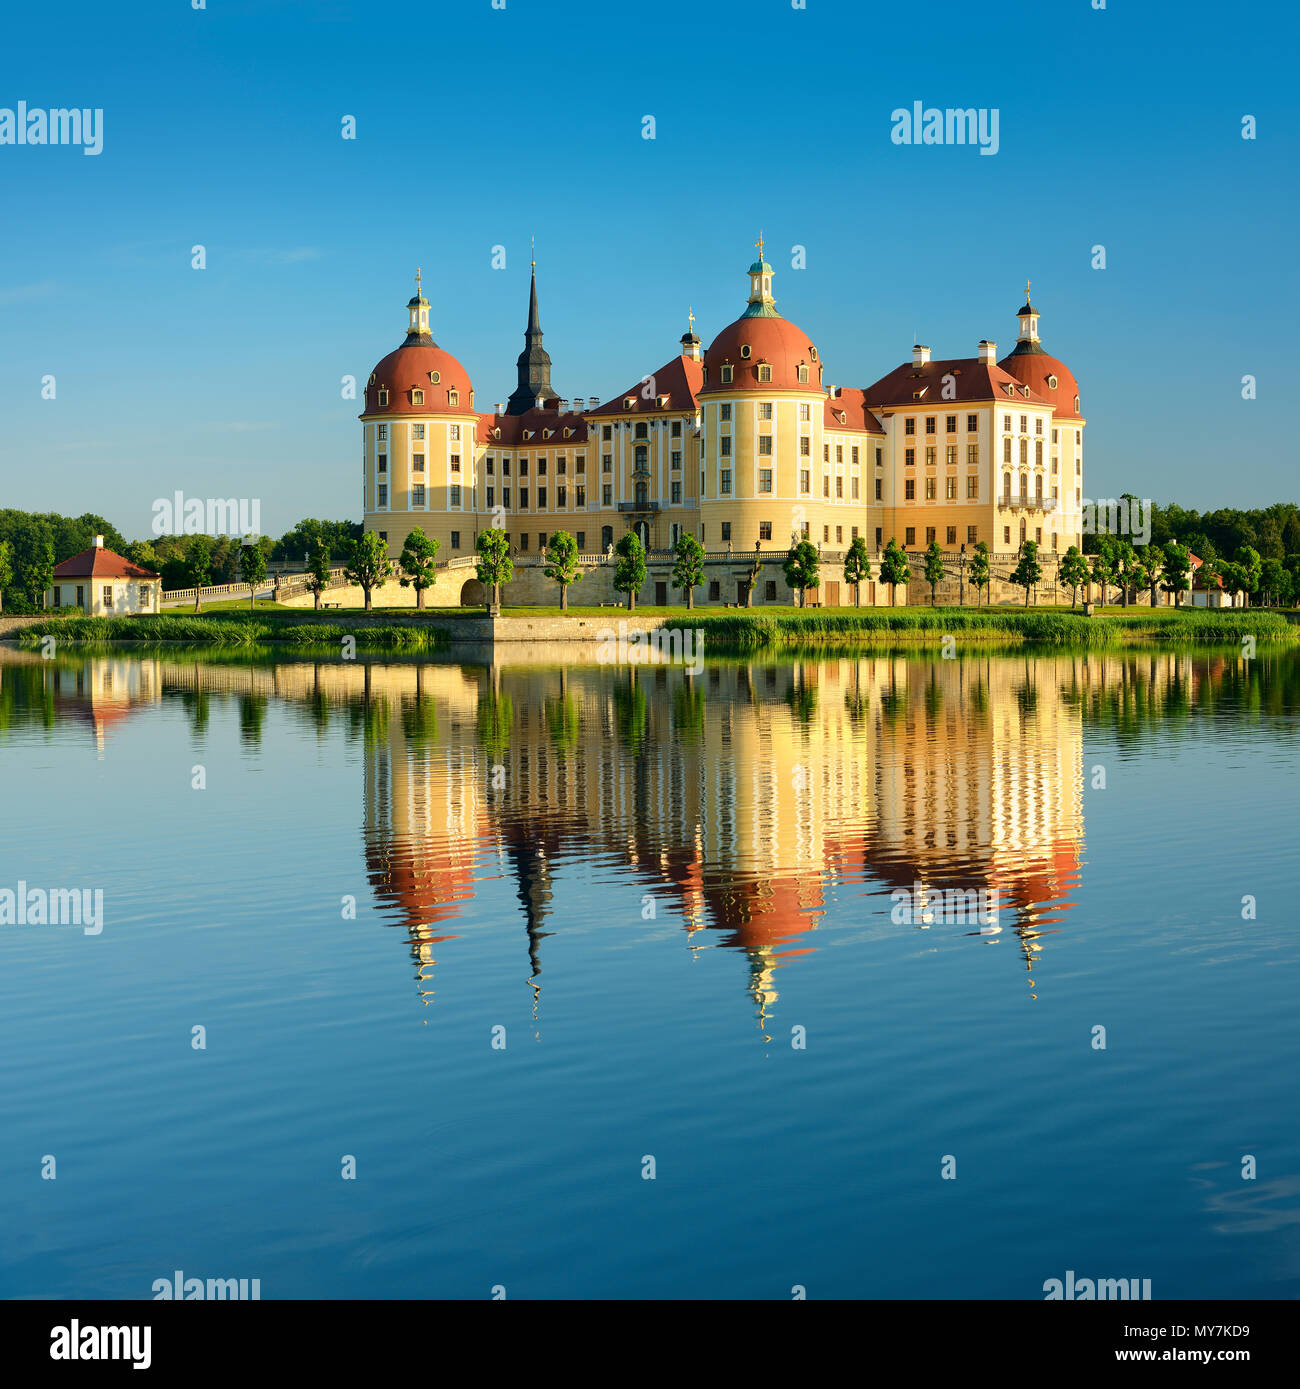 Castello di Moritzburg, residenza di caccia di Augusto il Forte, acqua di riflessione nel lago, Sassonia, Germania Foto Stock